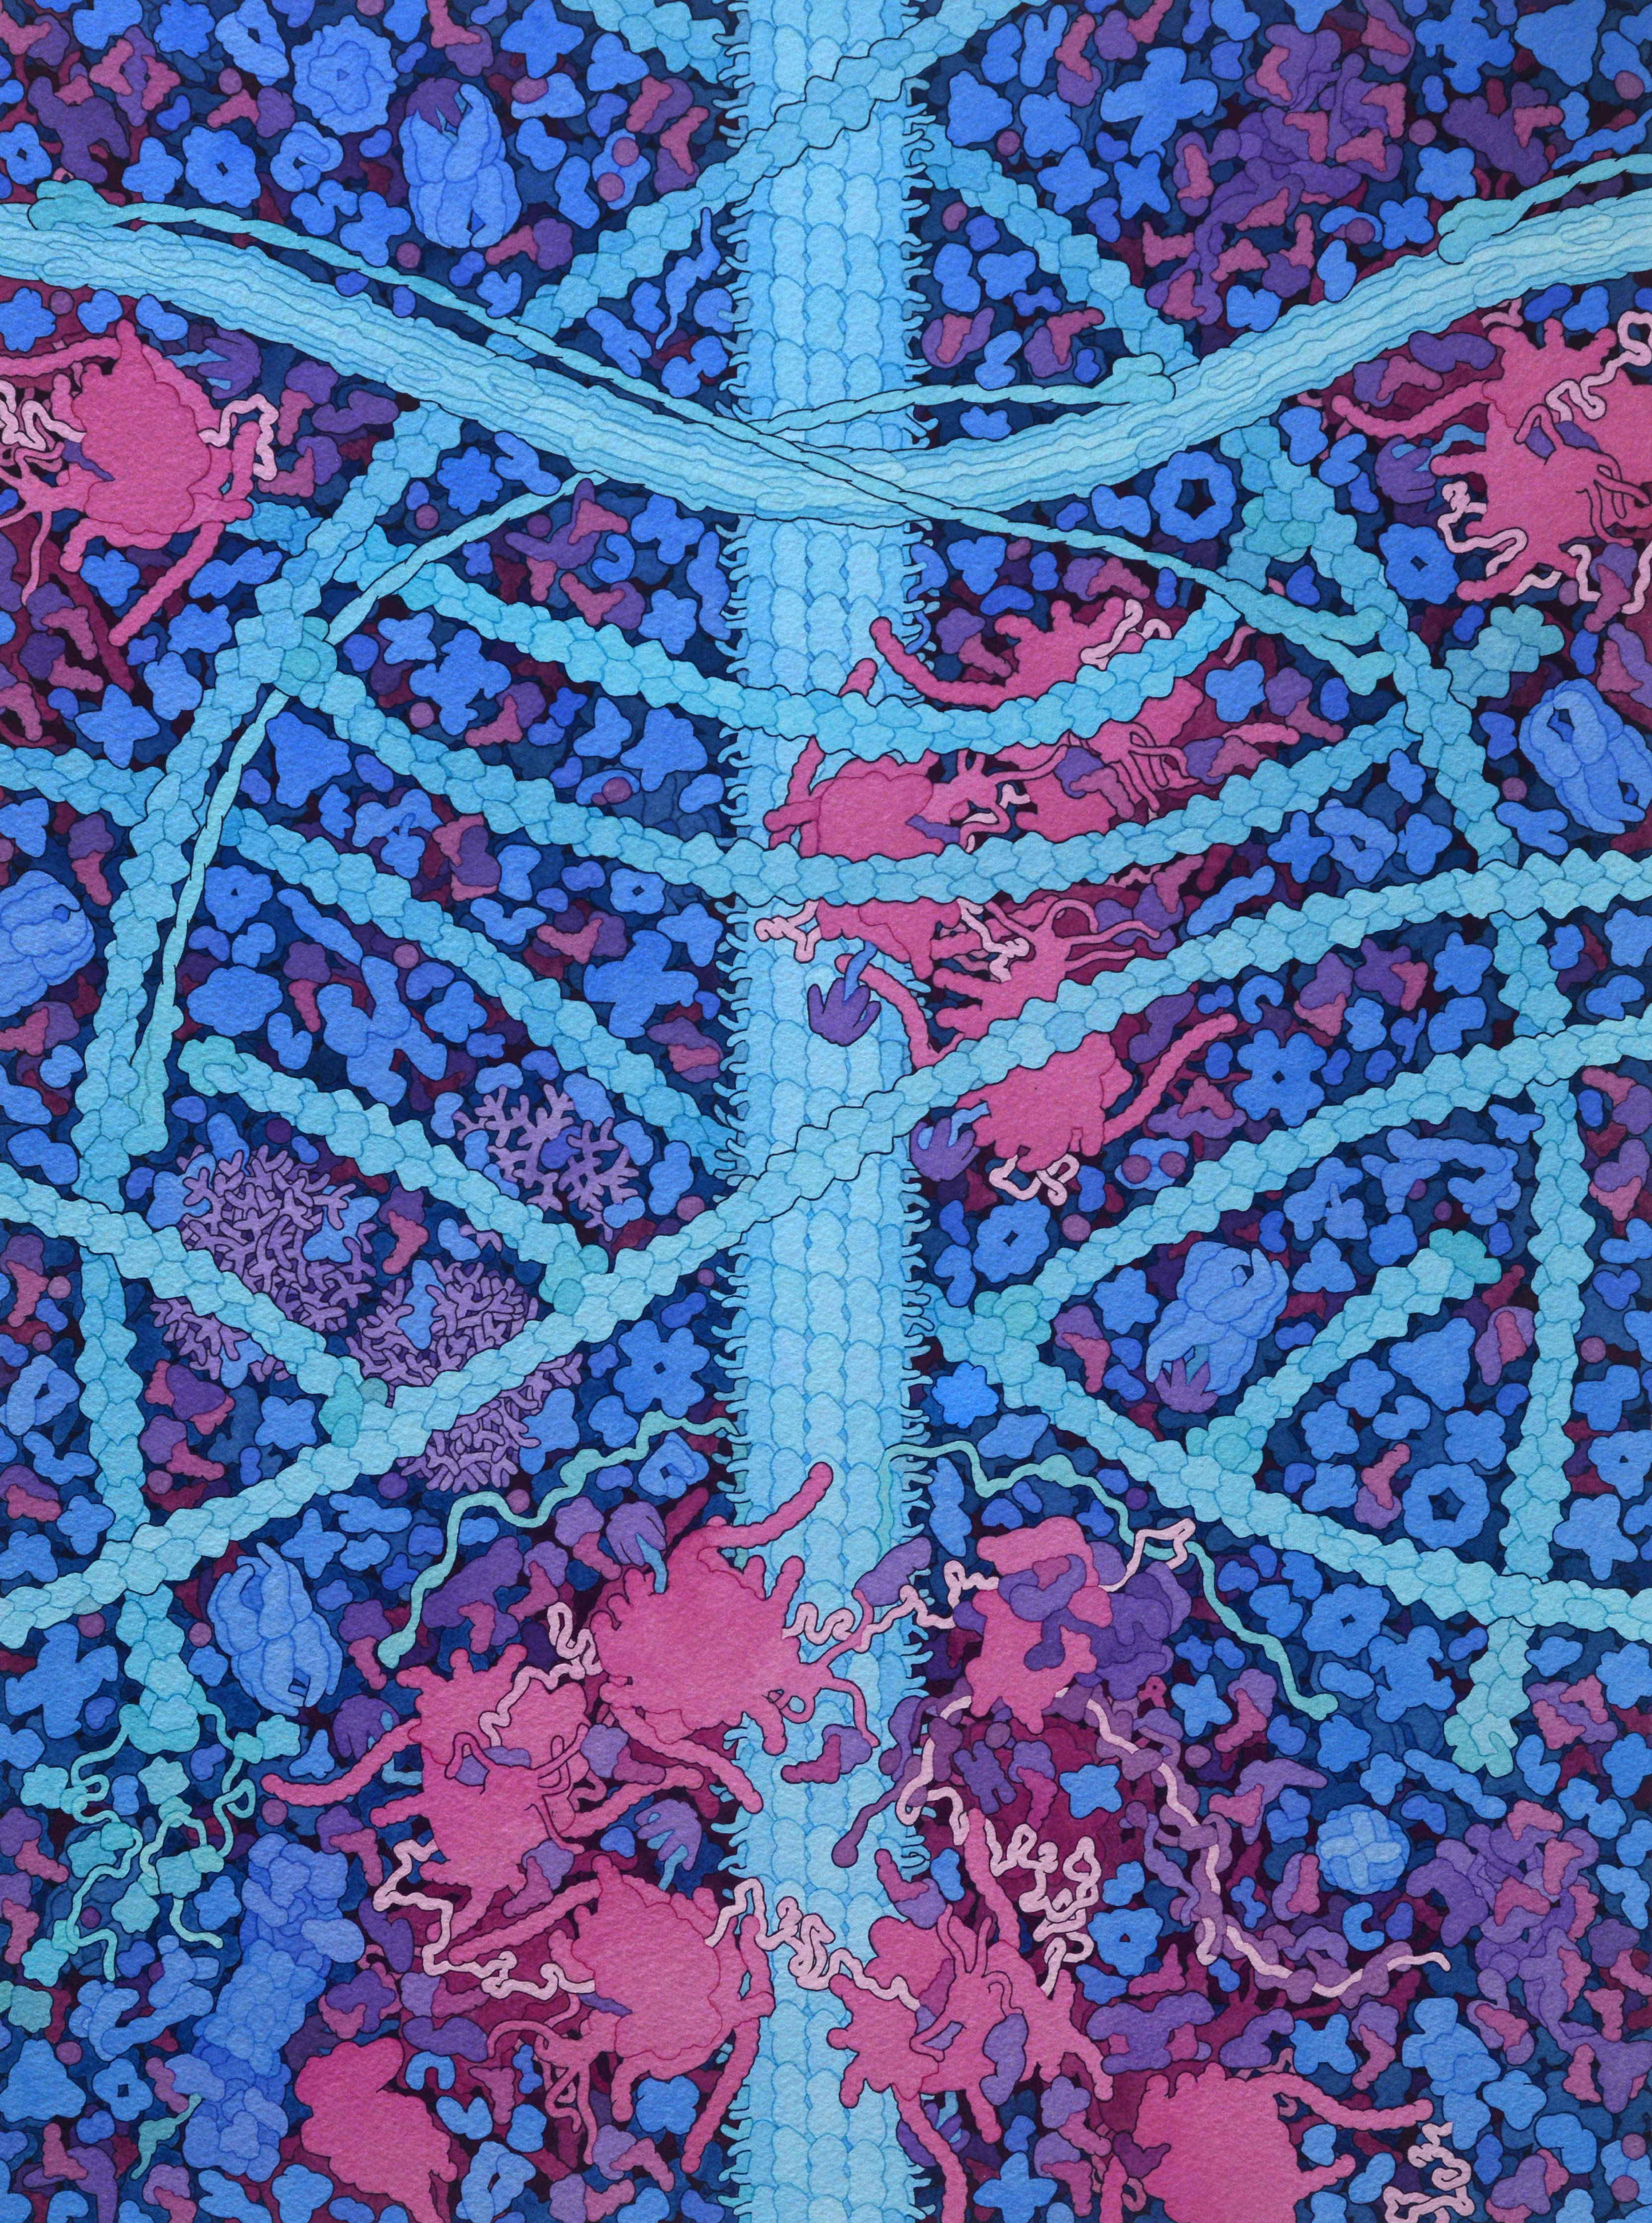 cytoskeleton image